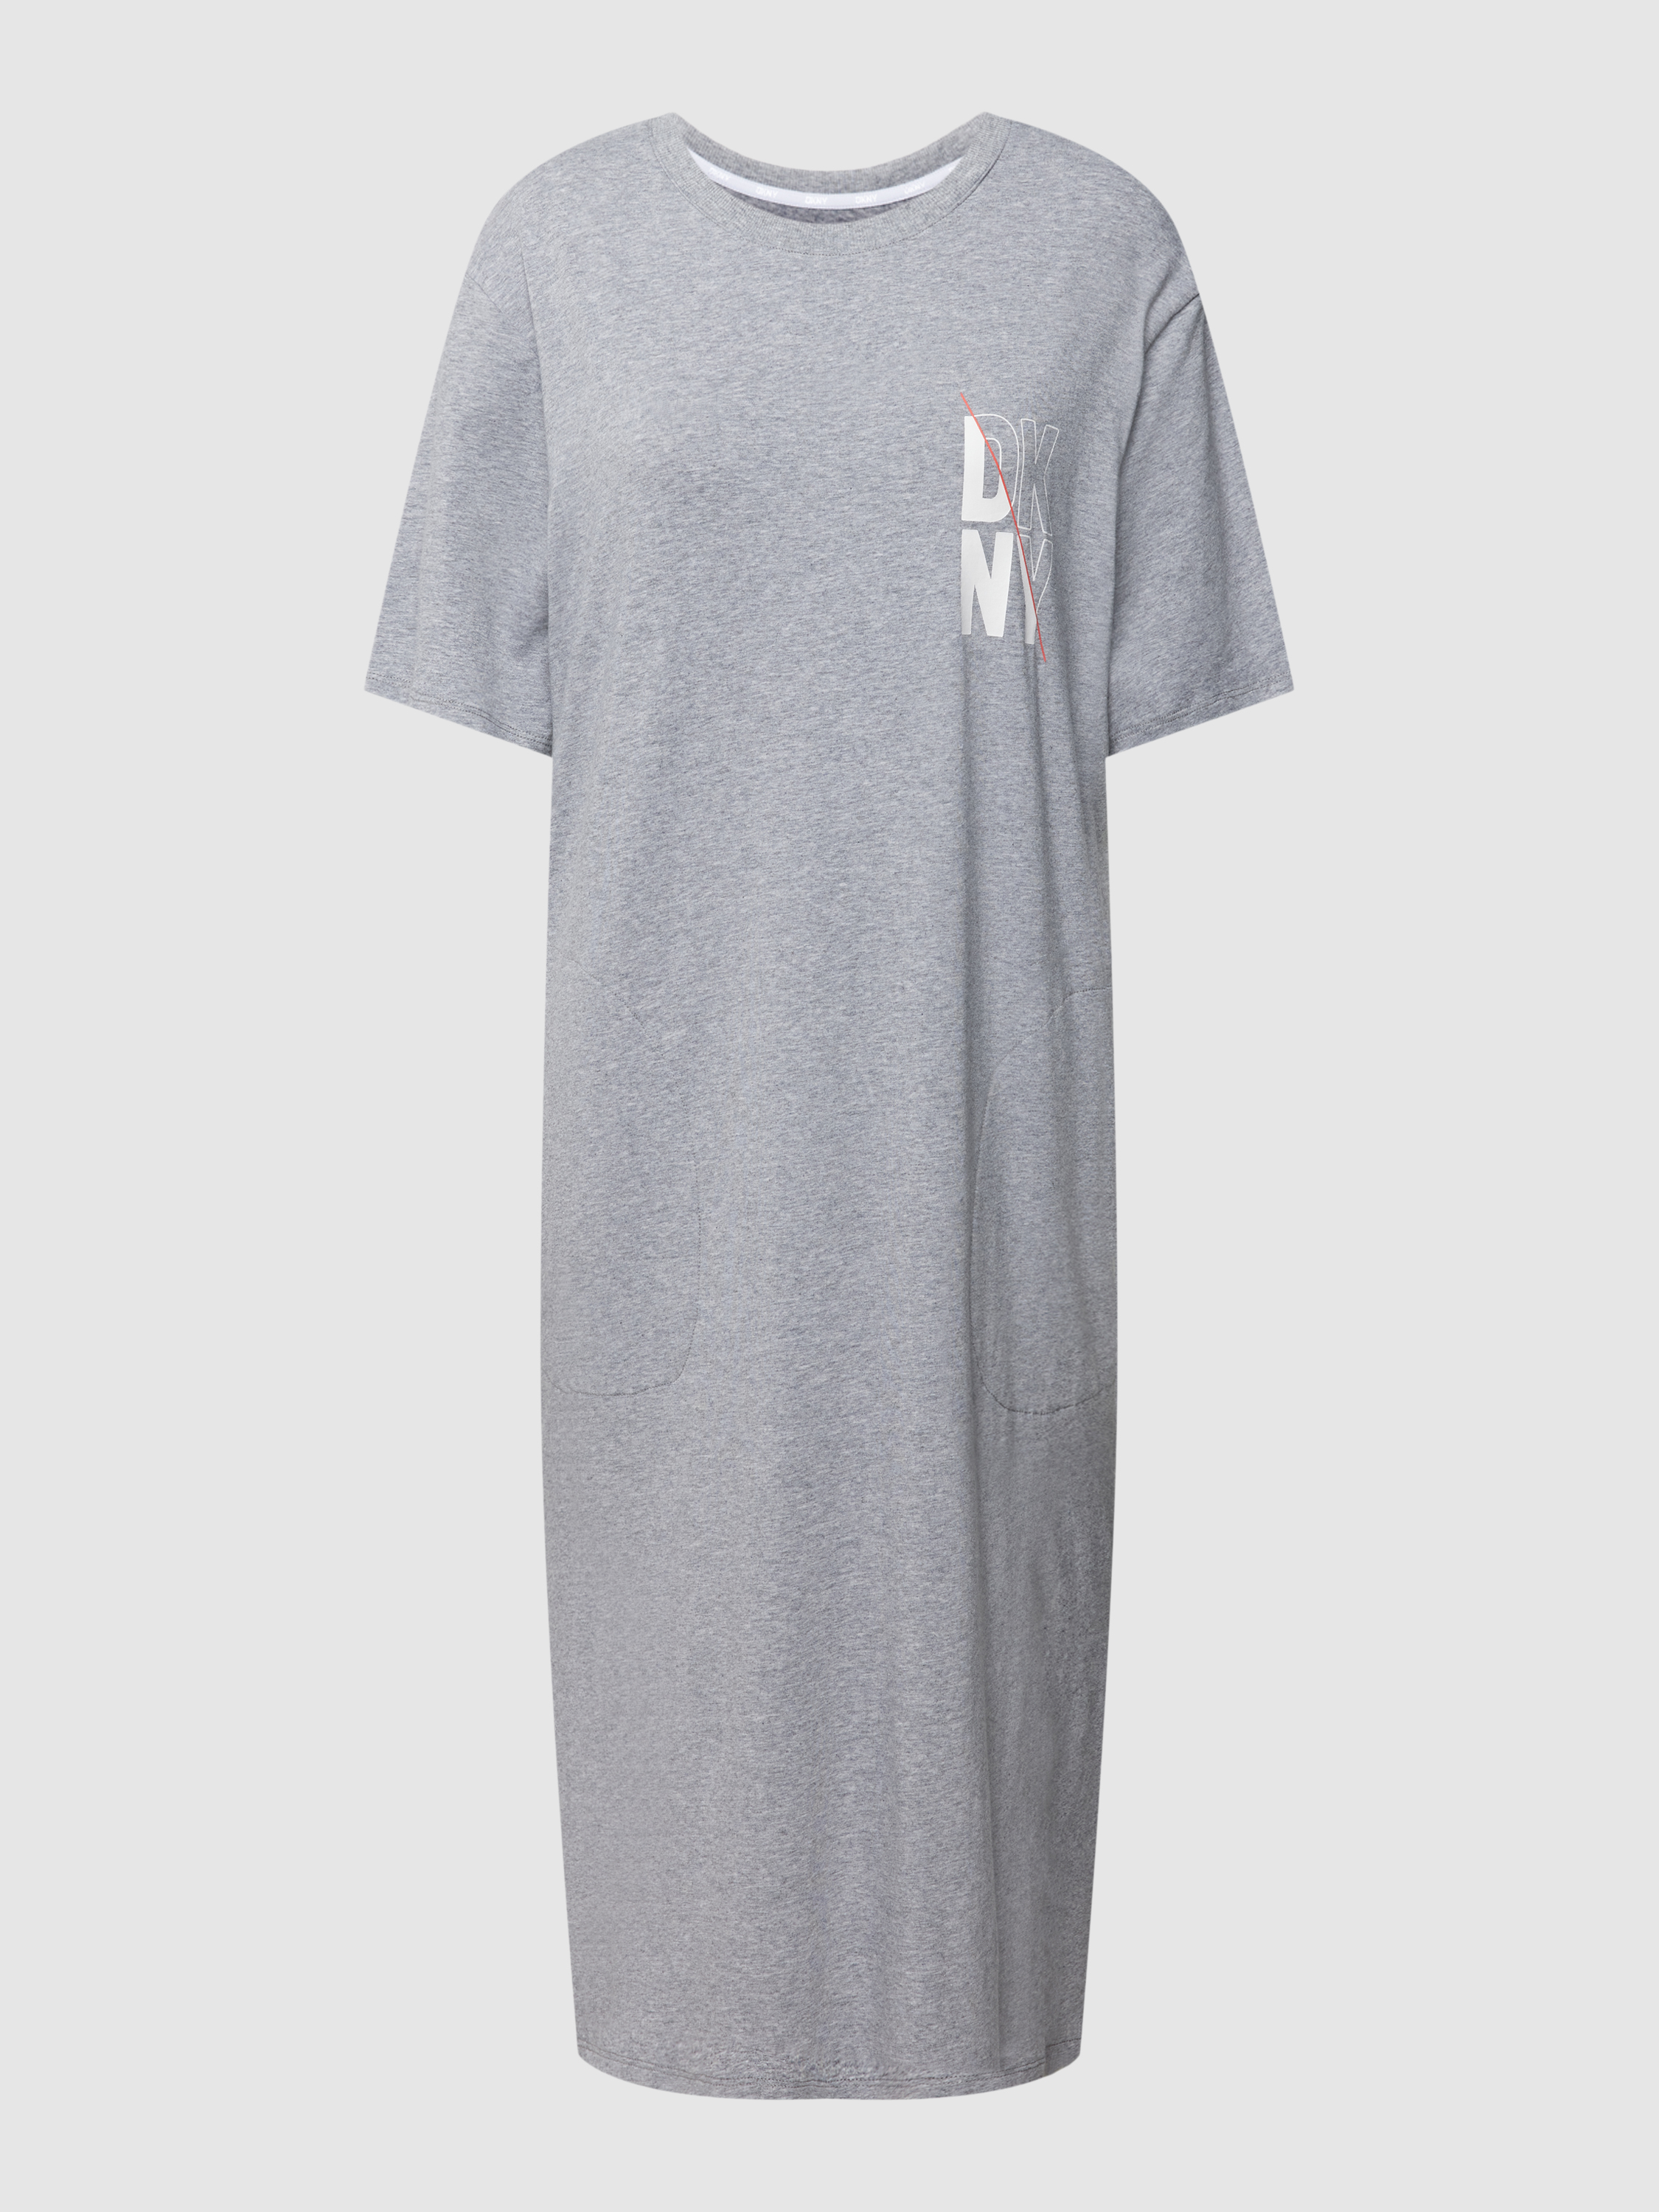 Платье домашнее женское DKNY 1785740 серое L (доставка из-за рубежа)